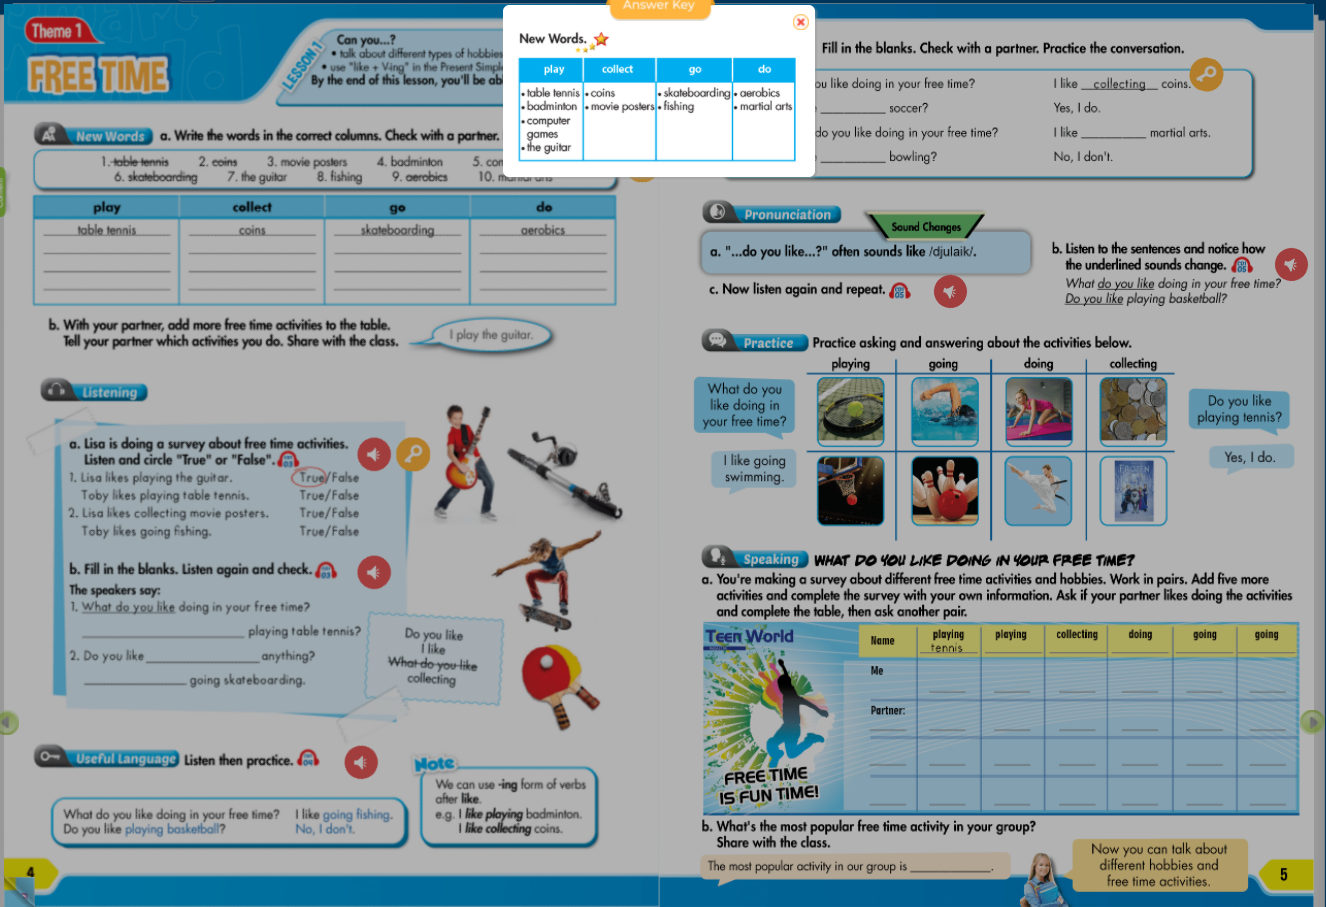 Hình ảnh [E-BOOK] i-Learn Smart World 7 Sách mềm sách học sinh